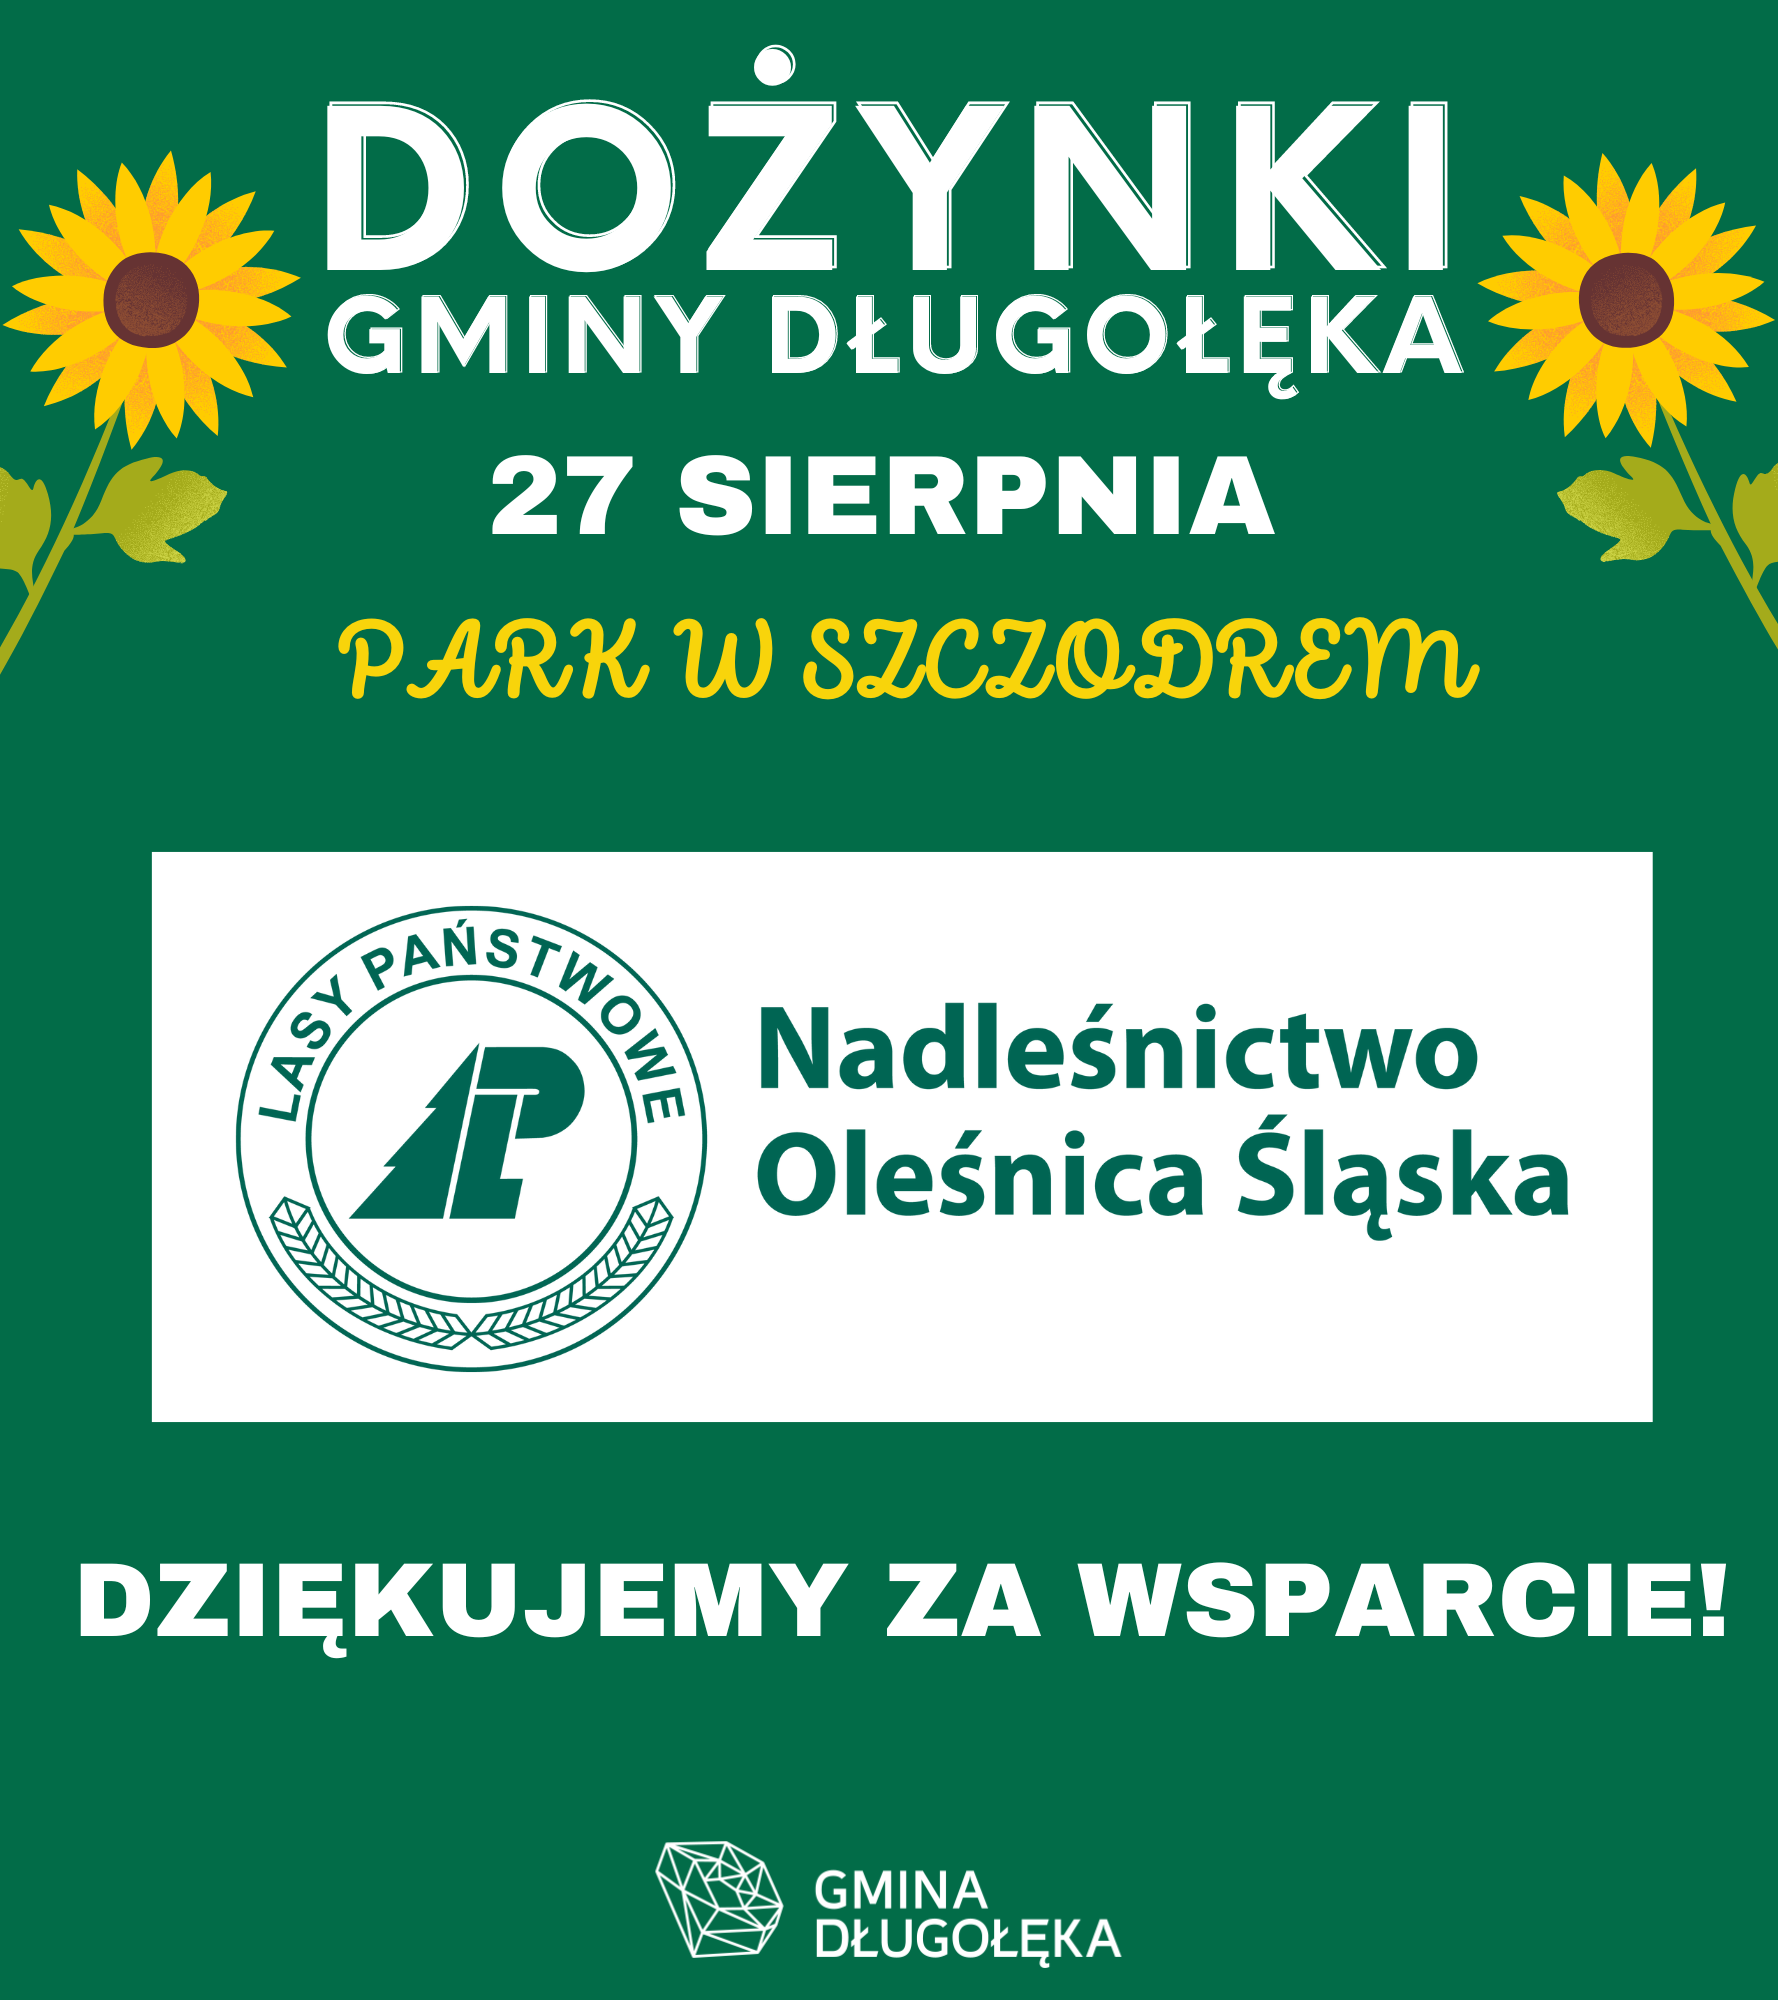 Nadleśnictwo Oleśnica Śląska partnerem Dożynek Gminy Długołęka